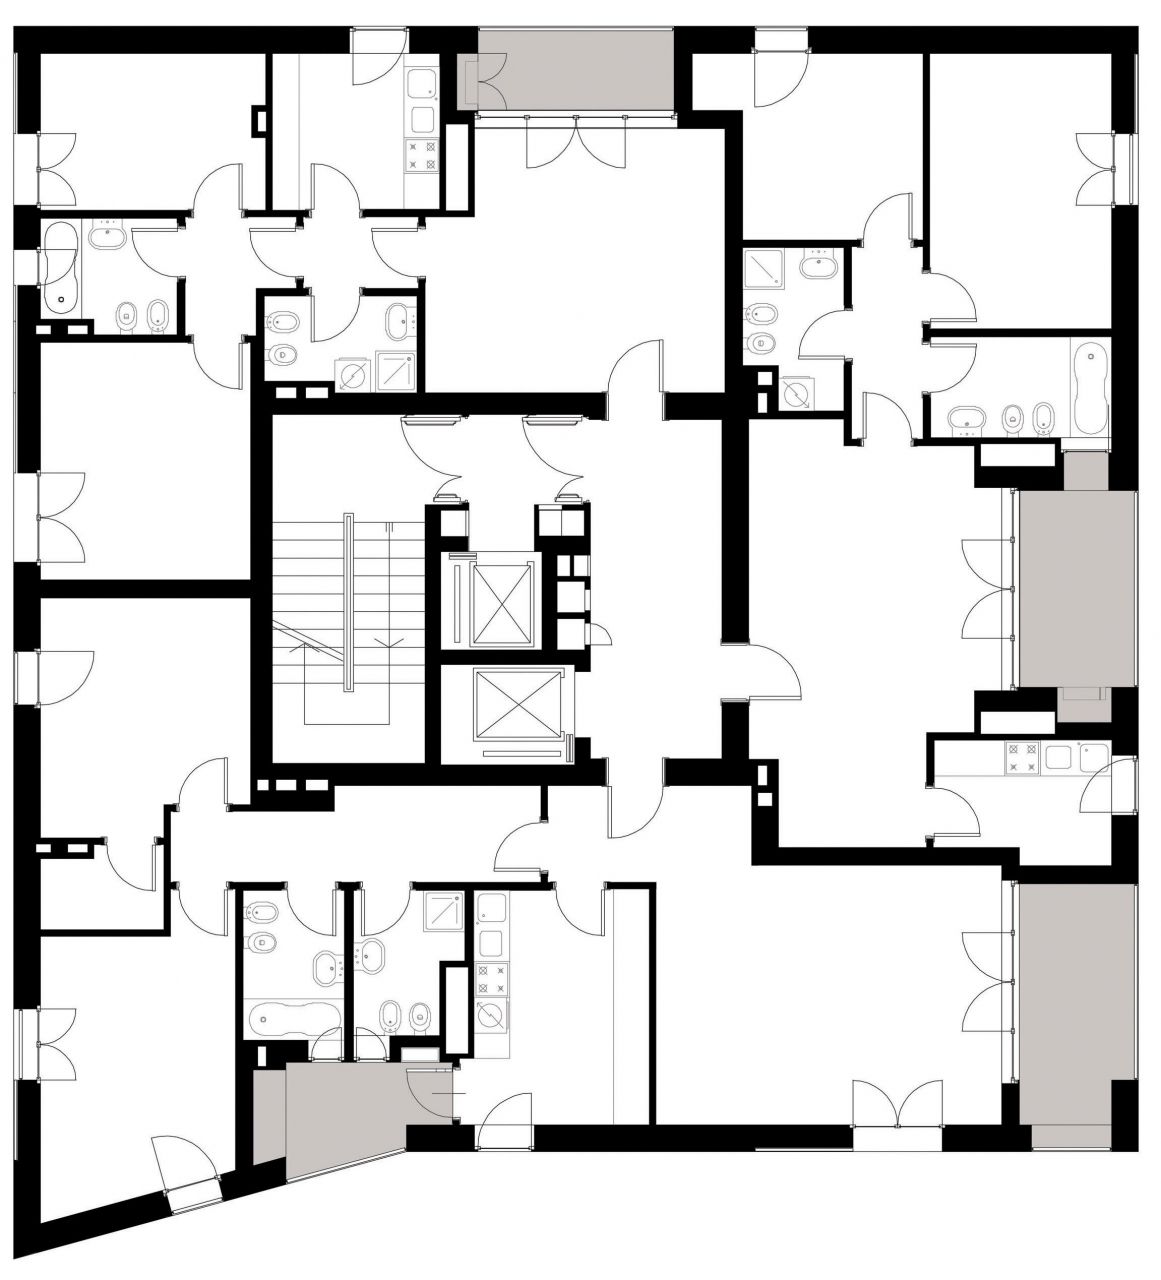 4/6 Typical floor plan